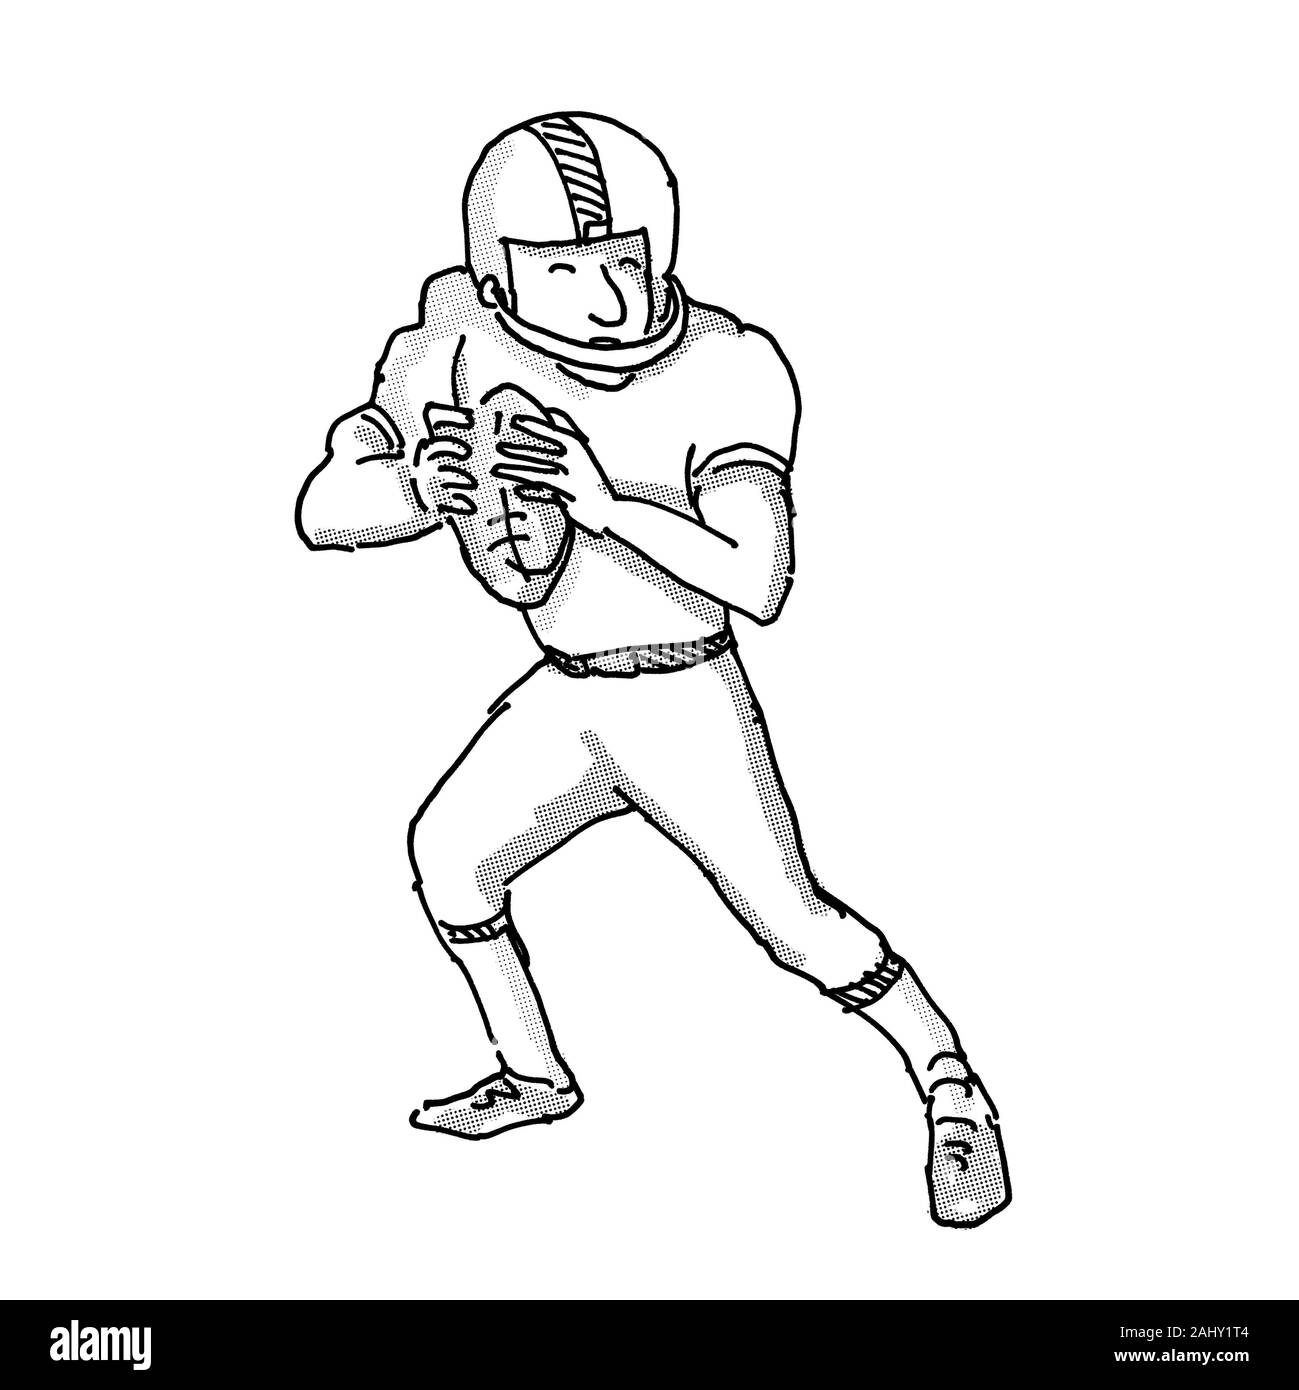 Ilustración del estilo de dibujos animados de un jugador de fútbol americano  hecho en blanco y negro sobre fondo blanco aisladas Fotografía de stock -  Alamy